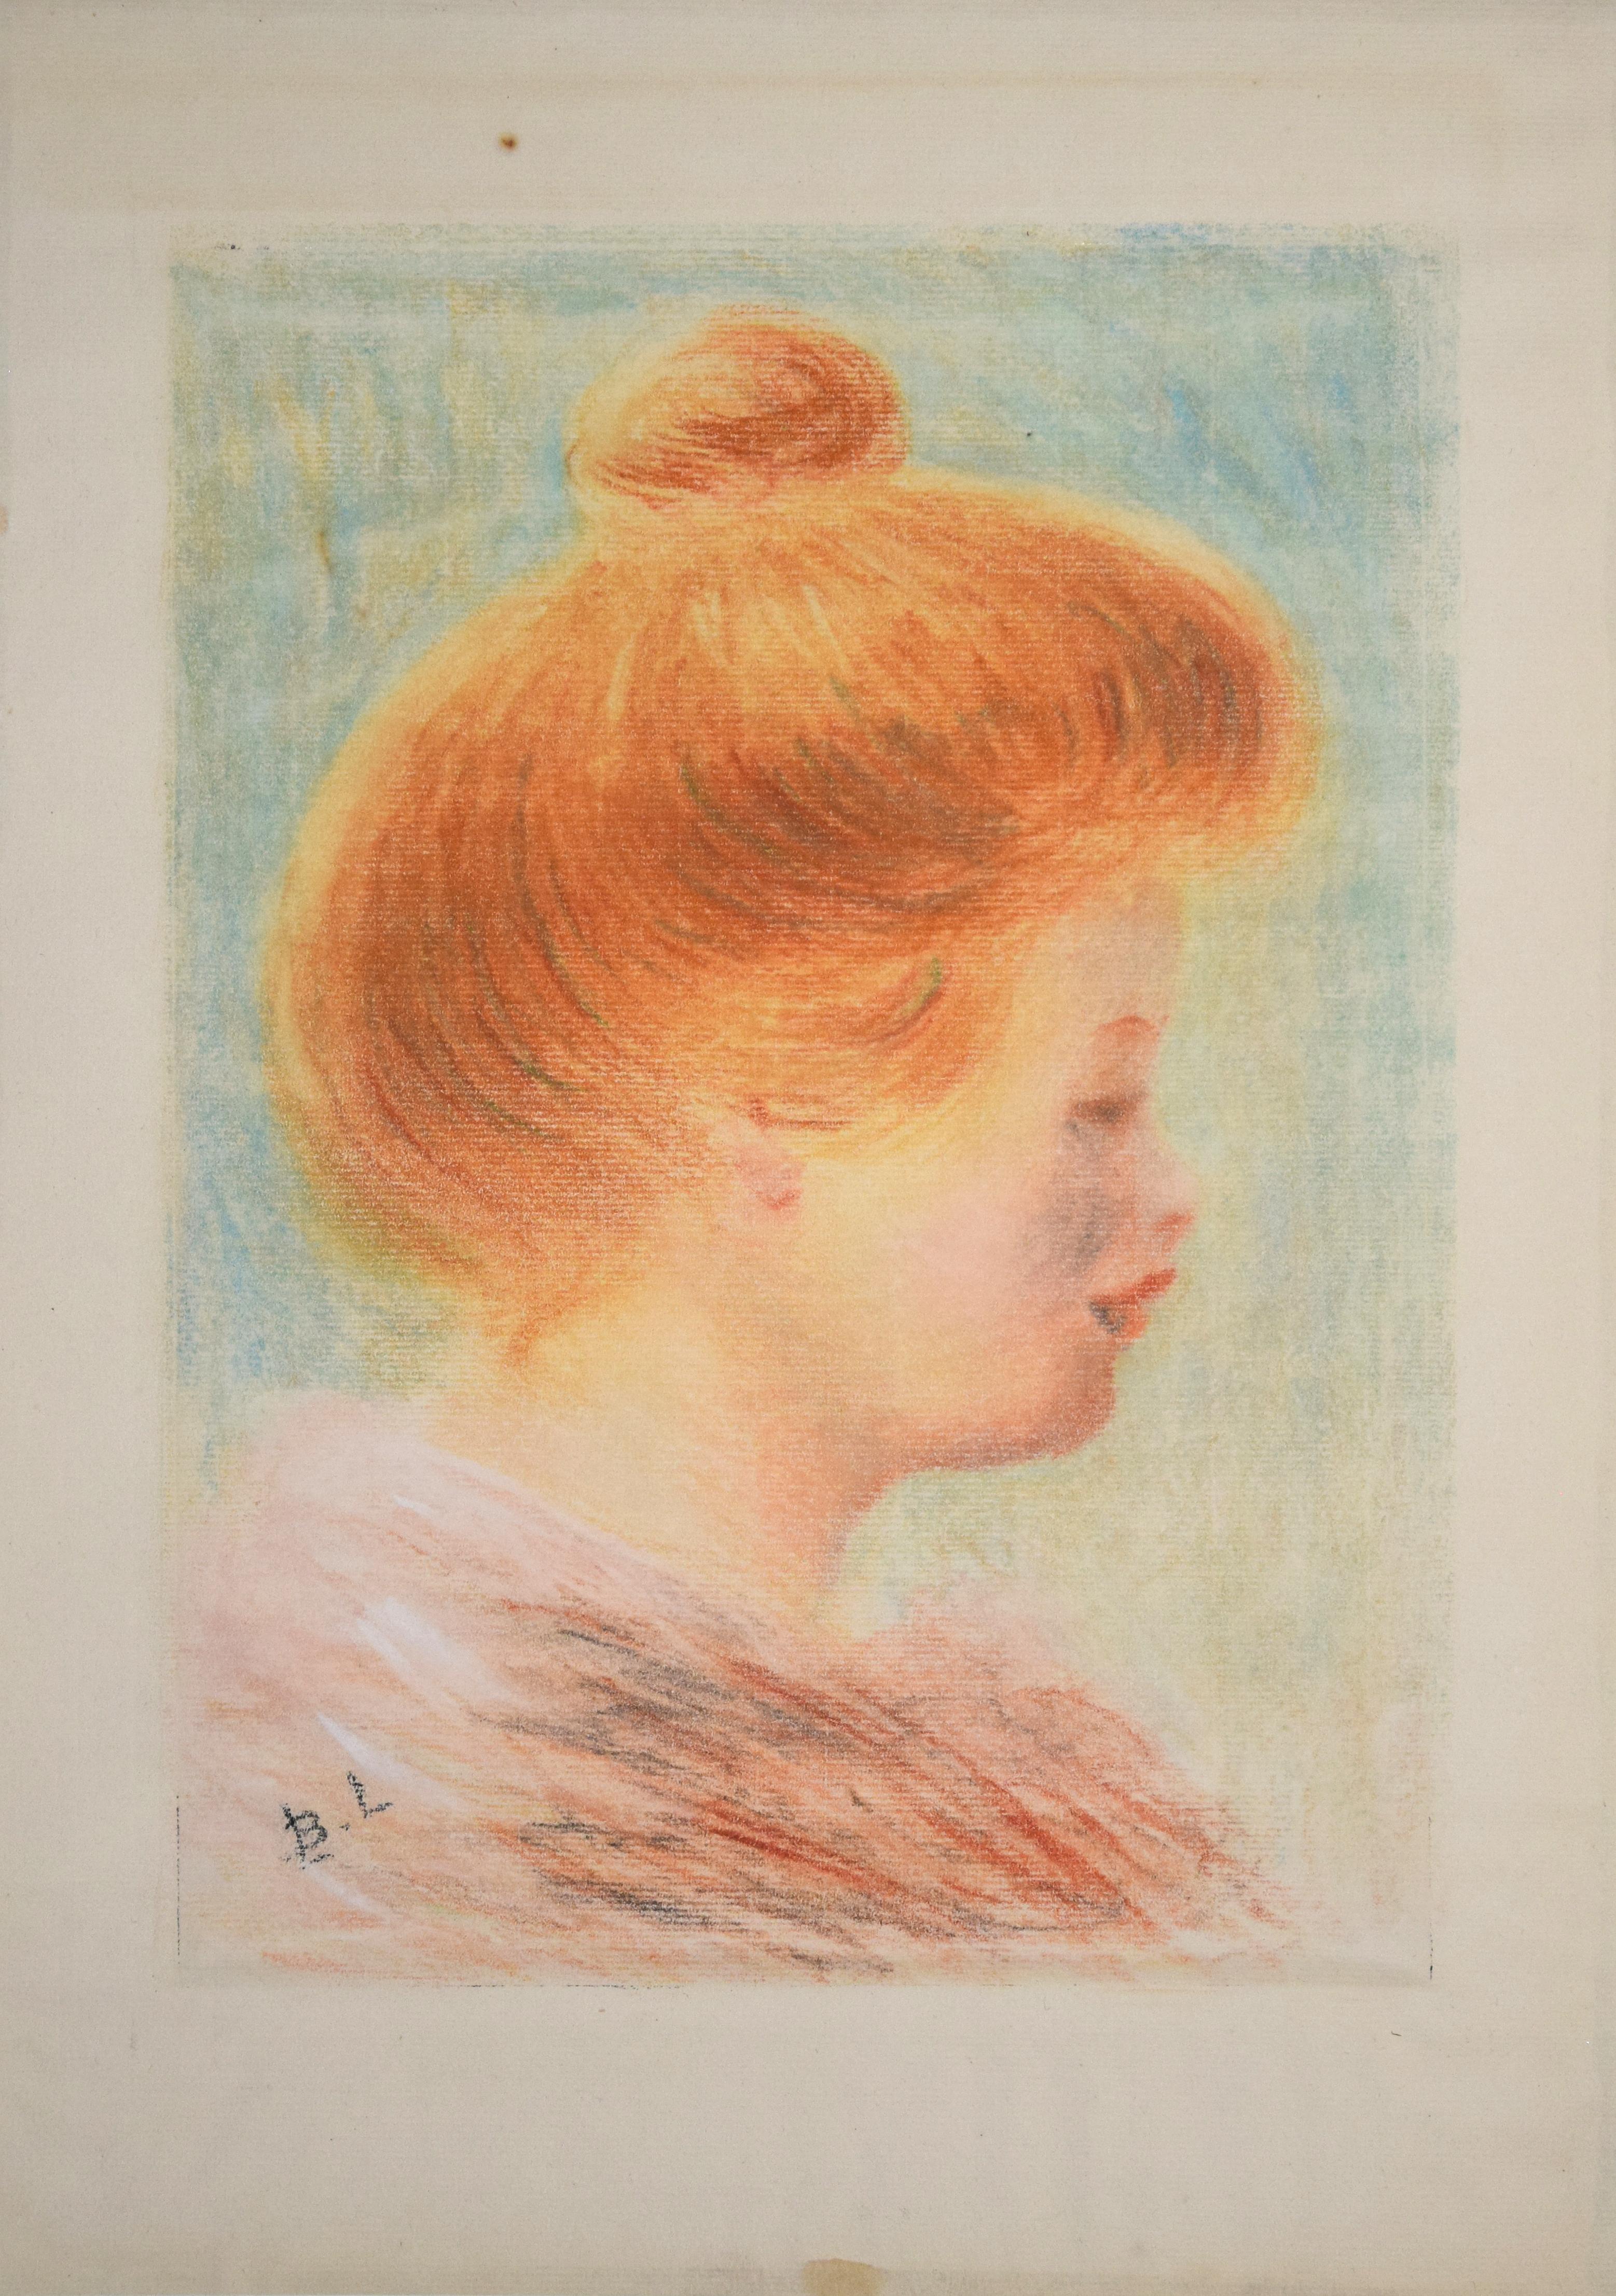 Das Frauenporträt im Profil ist ein Originalwerk des französischen Künstlers Bernard Lemaire, das zwischen dem Ende des XIX. und dem Beginn des XX. Jahrhunderts entstand.
Monotypie auf Papier. Die Platte ist auf Karton geklebt (cm 63,5 x 50).